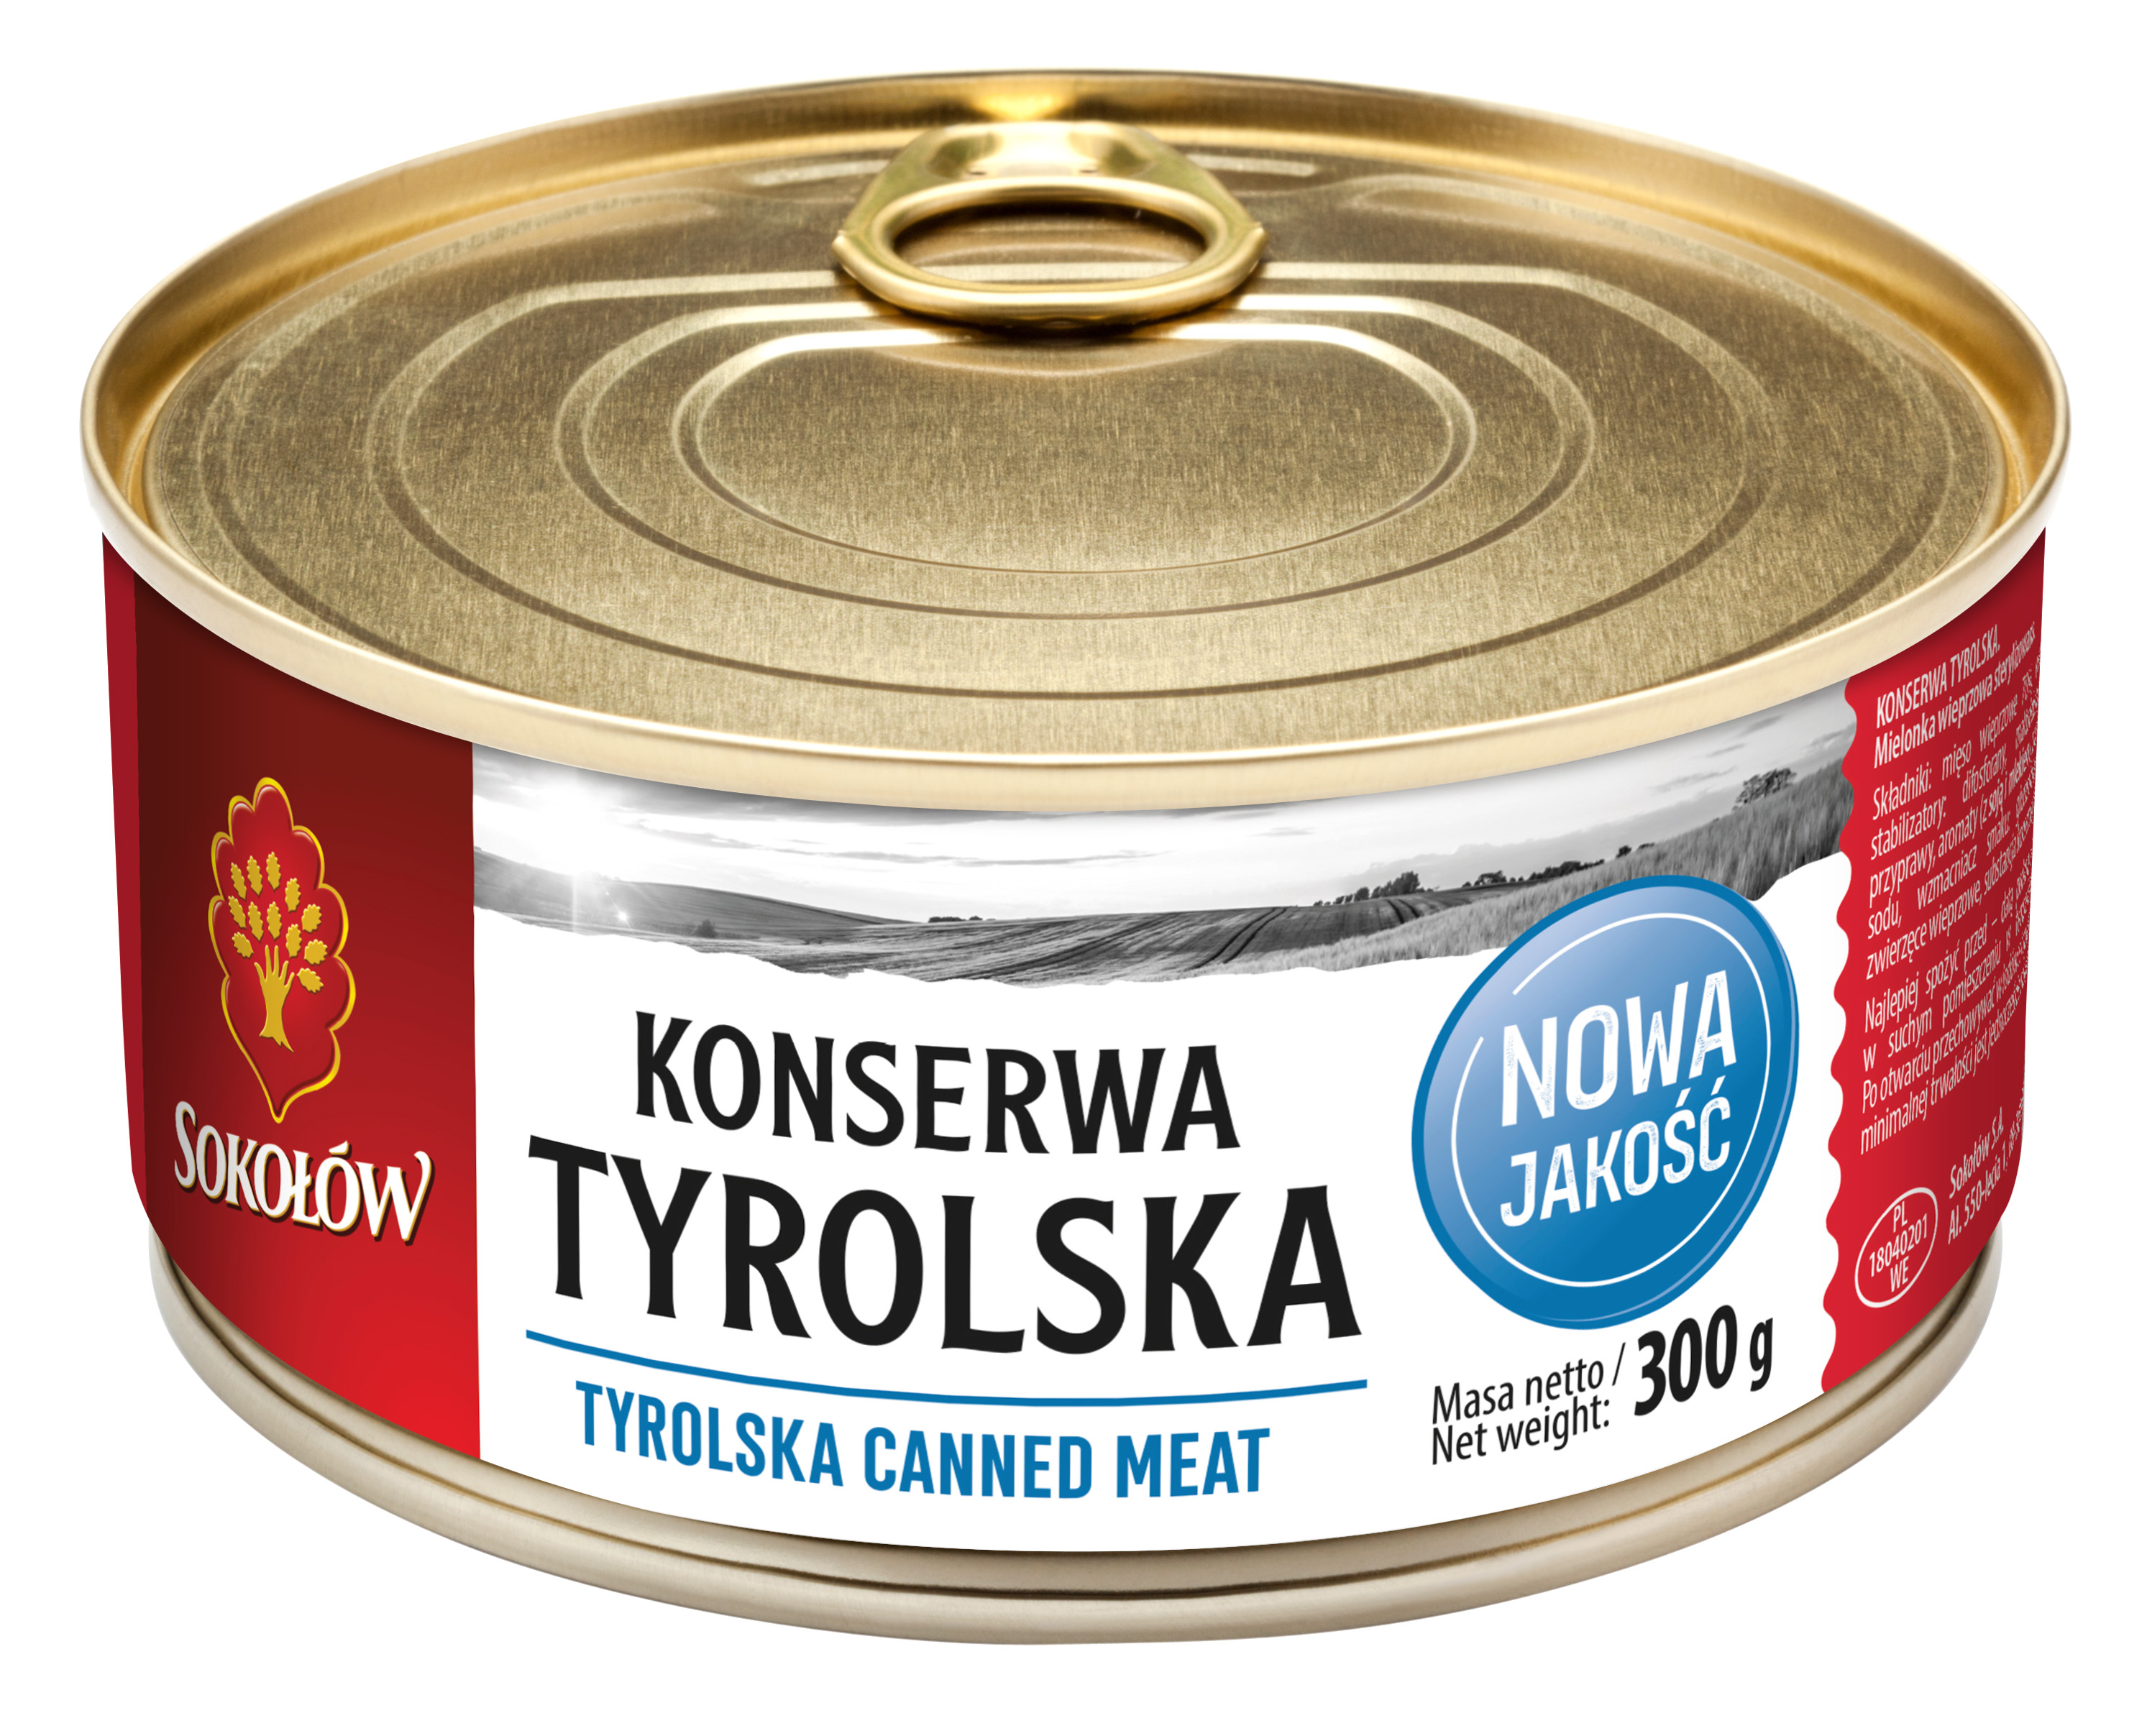 Sokołów Tyrolean canned food